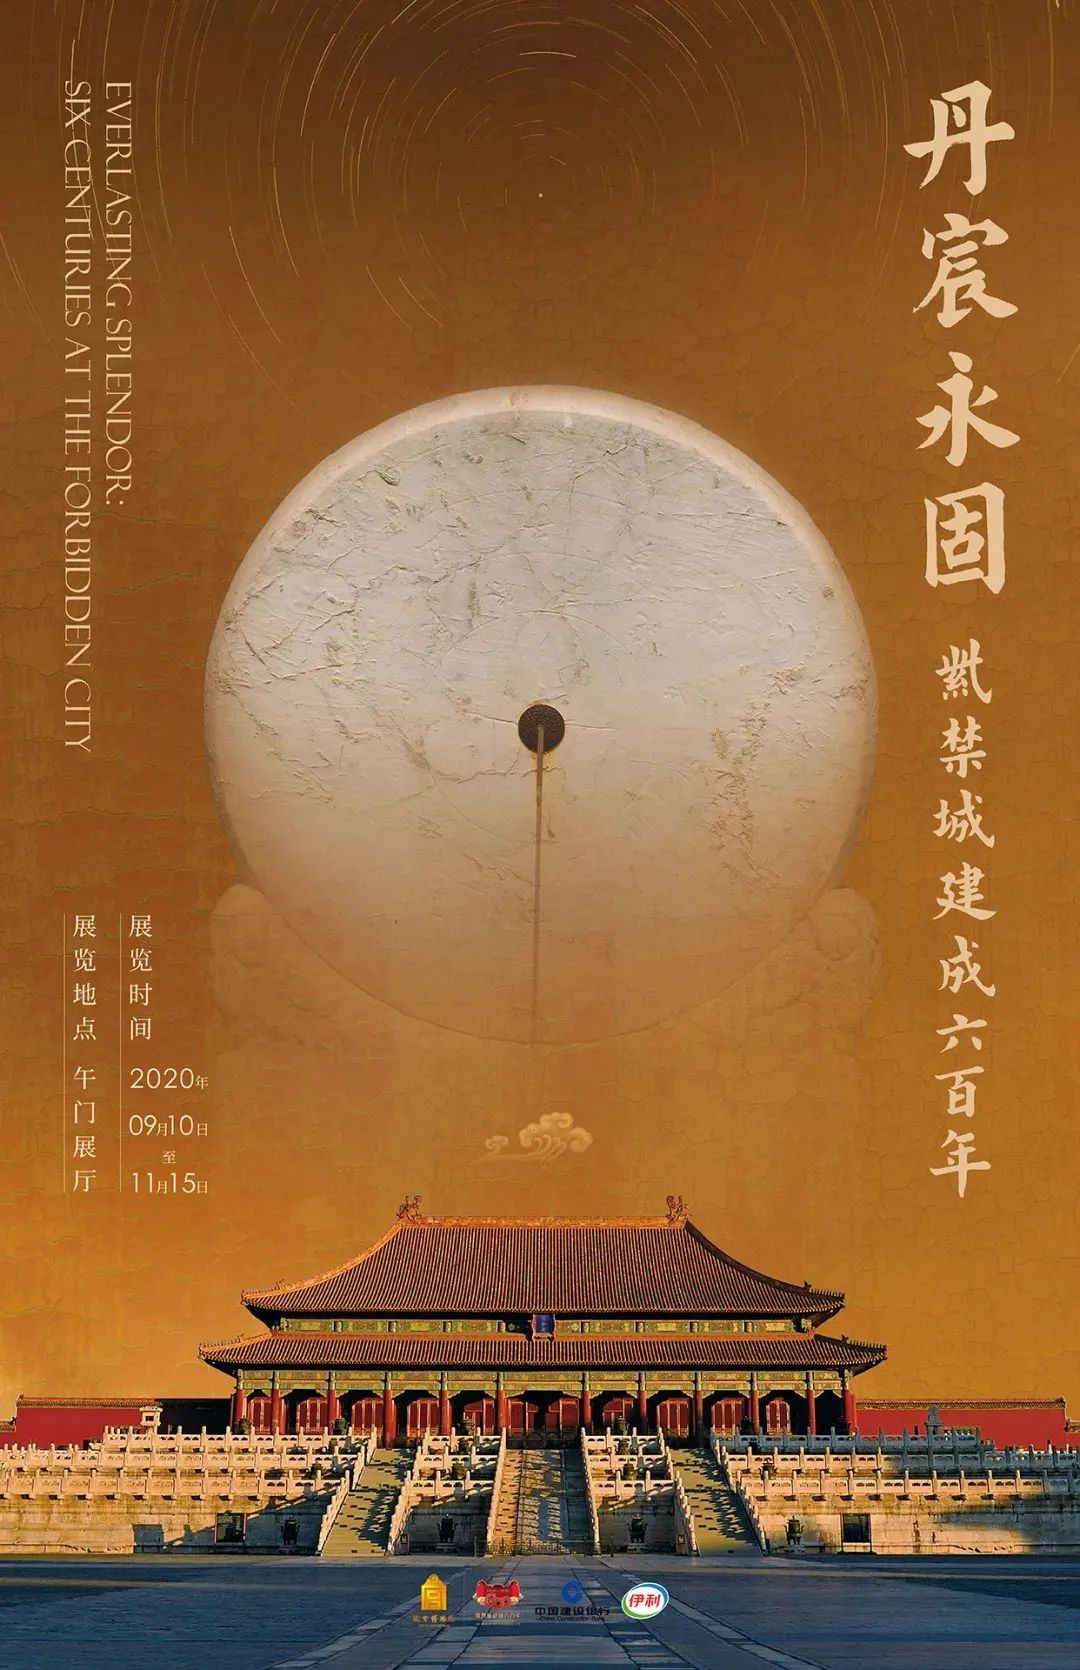 【值得一看的展览】2020年10月 北京、上海展览信息